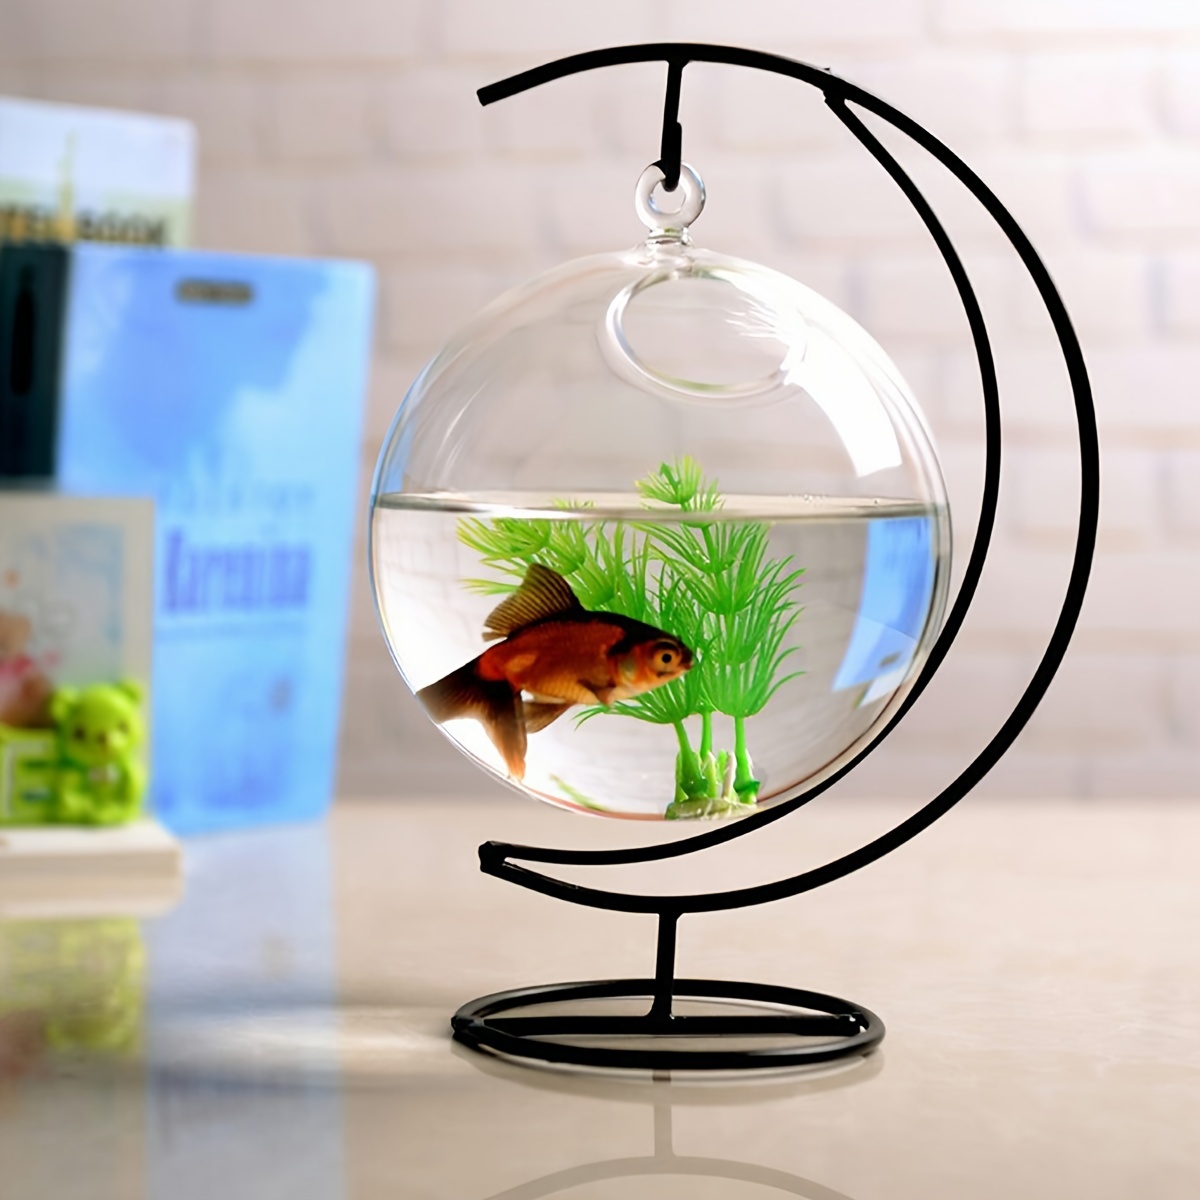 Fish Tank for Betta Fish,Shatterproof Fish Aquarium Bowl for Goldfish   Mini Aquarium for Living Room, Apartment, Offices, Home for Goldfish, Betta  Fish Uuum : : Pet Supplies